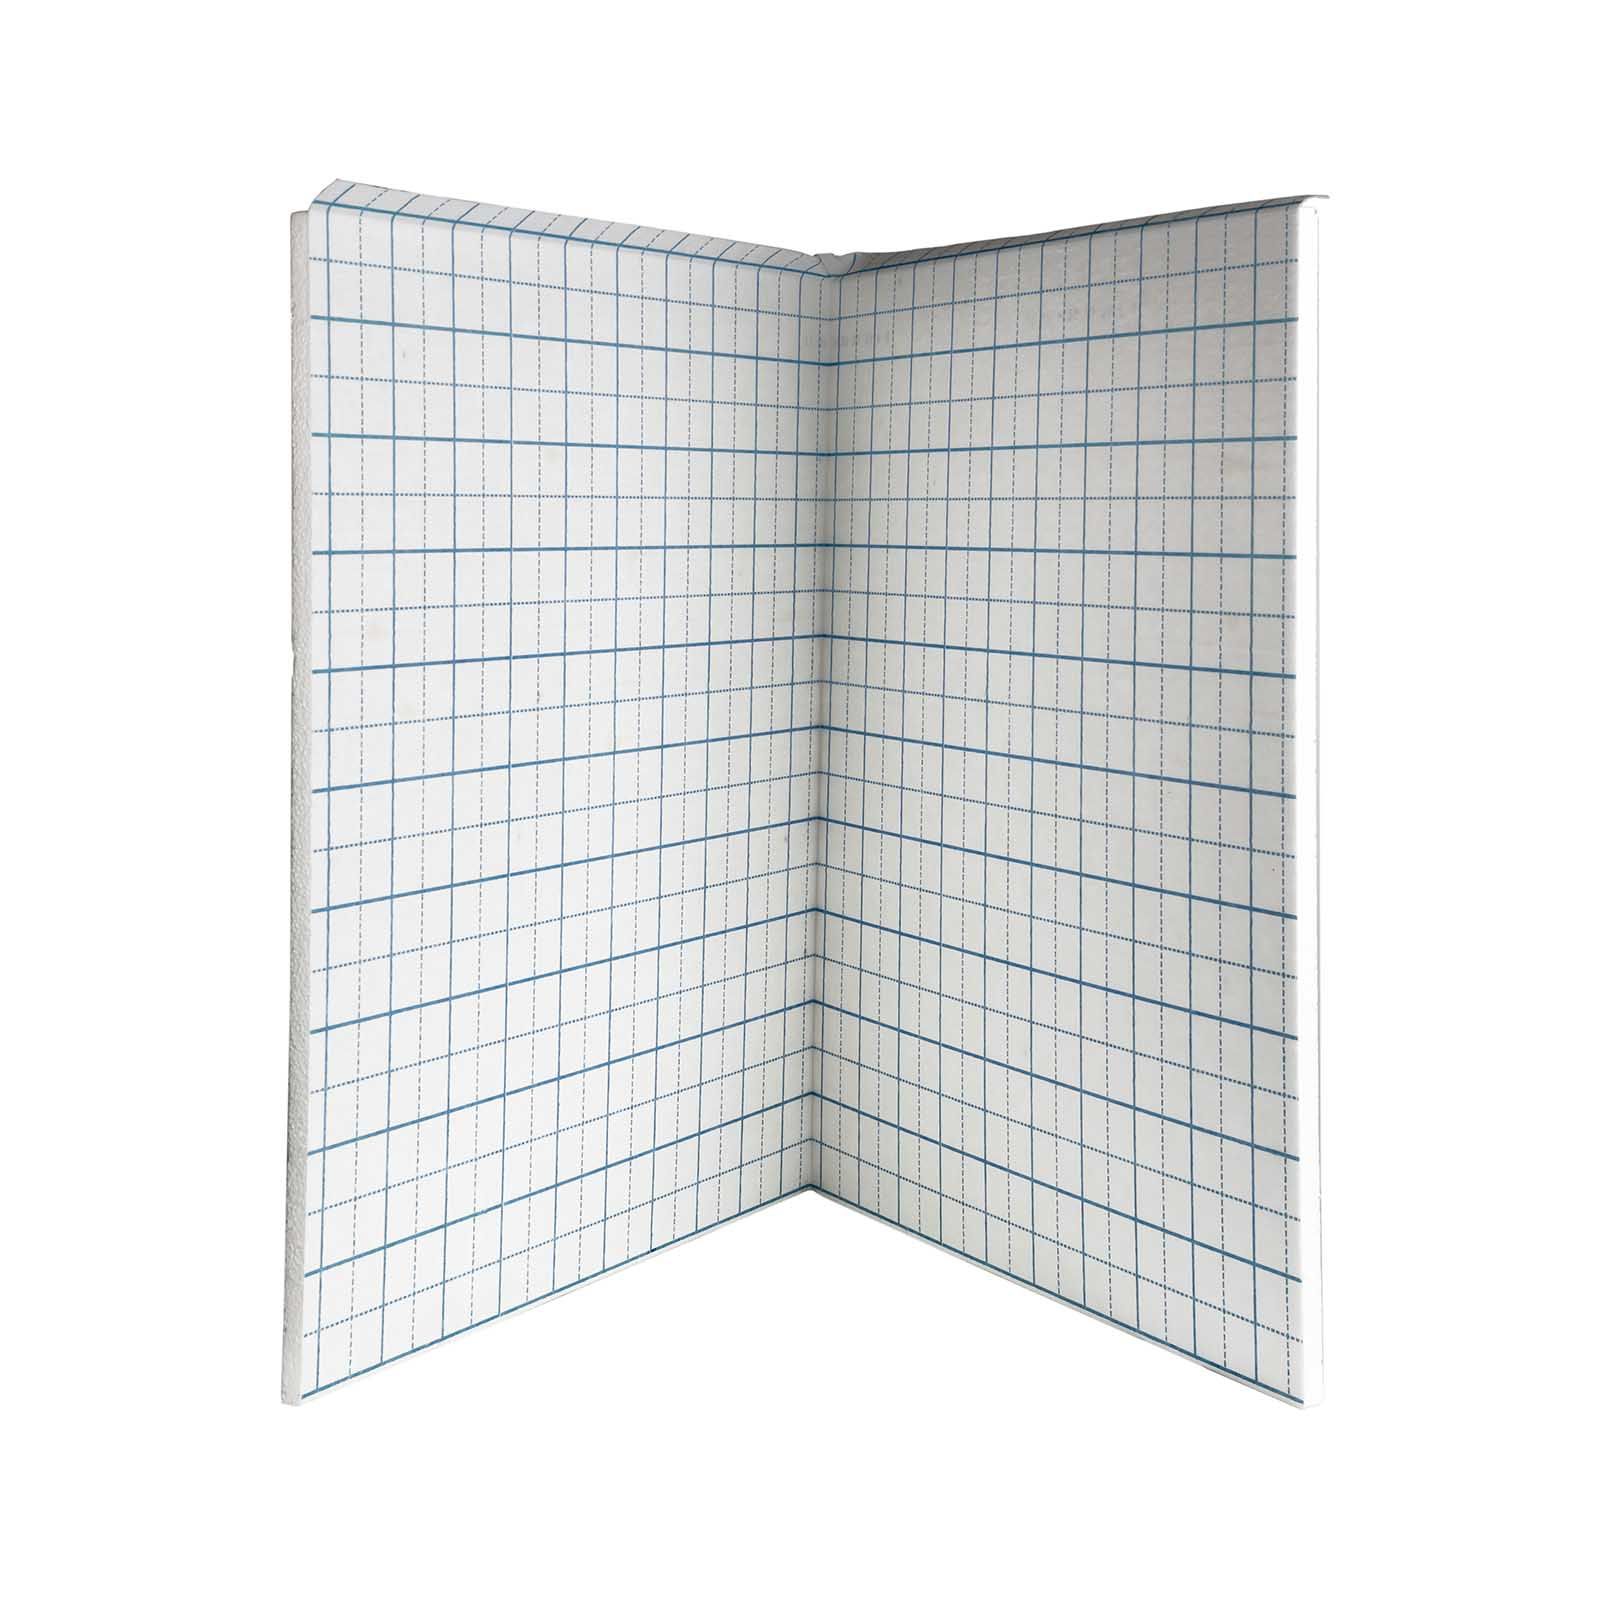 30 mm Klettplatte Faltplatte 30-3 WLG 040 10 m² Fußbodenheizung Klettsystem